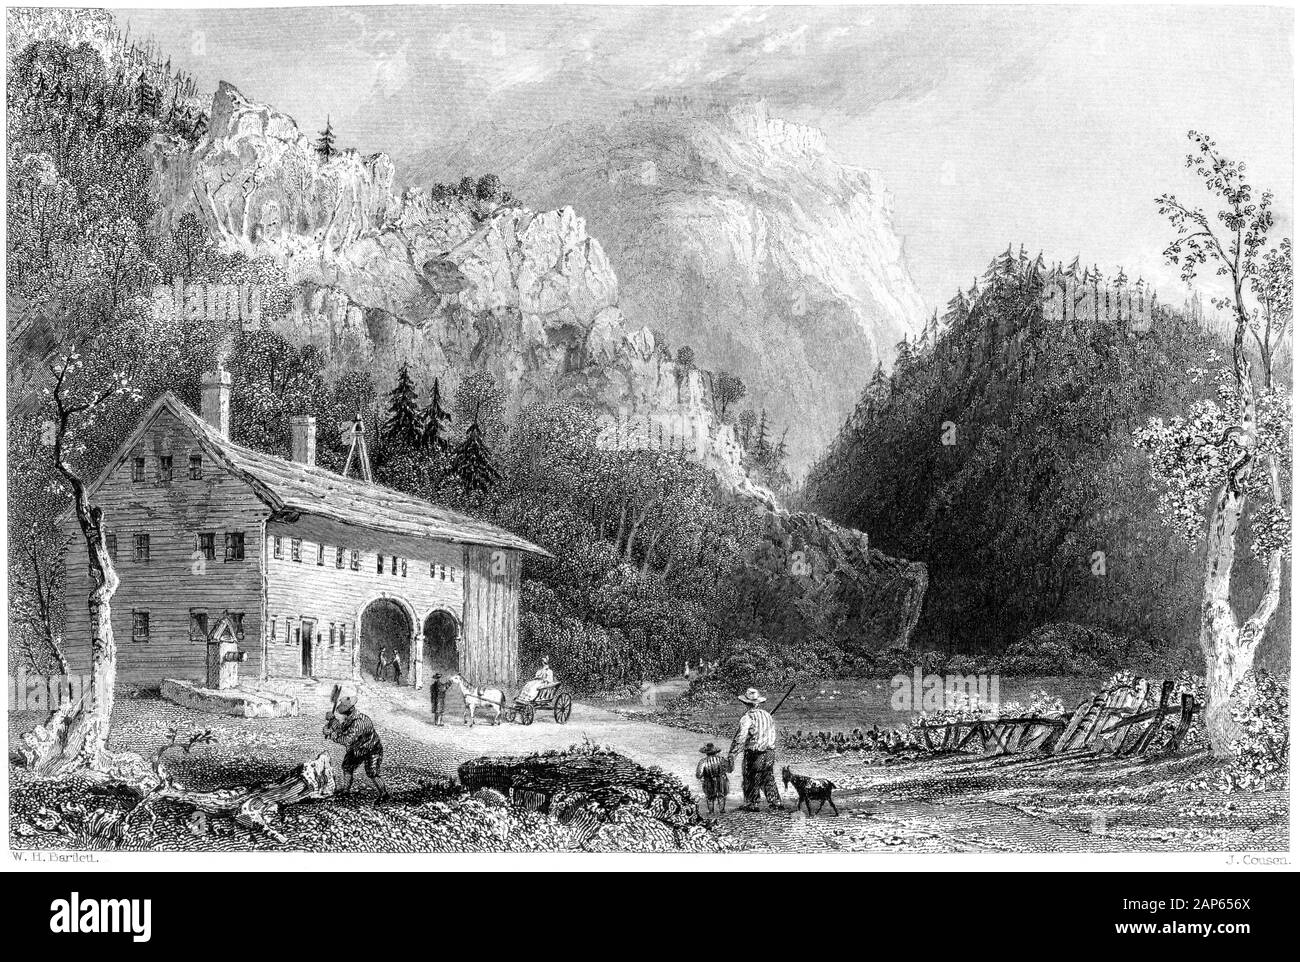 Grabado de la Casa Notch, Montañas Blancas (New Hampshire) escaneado a alta  resolución. De un libro impreso en 1840. Se cree libre de derechos de autor  Fotografía de stock - Alamy